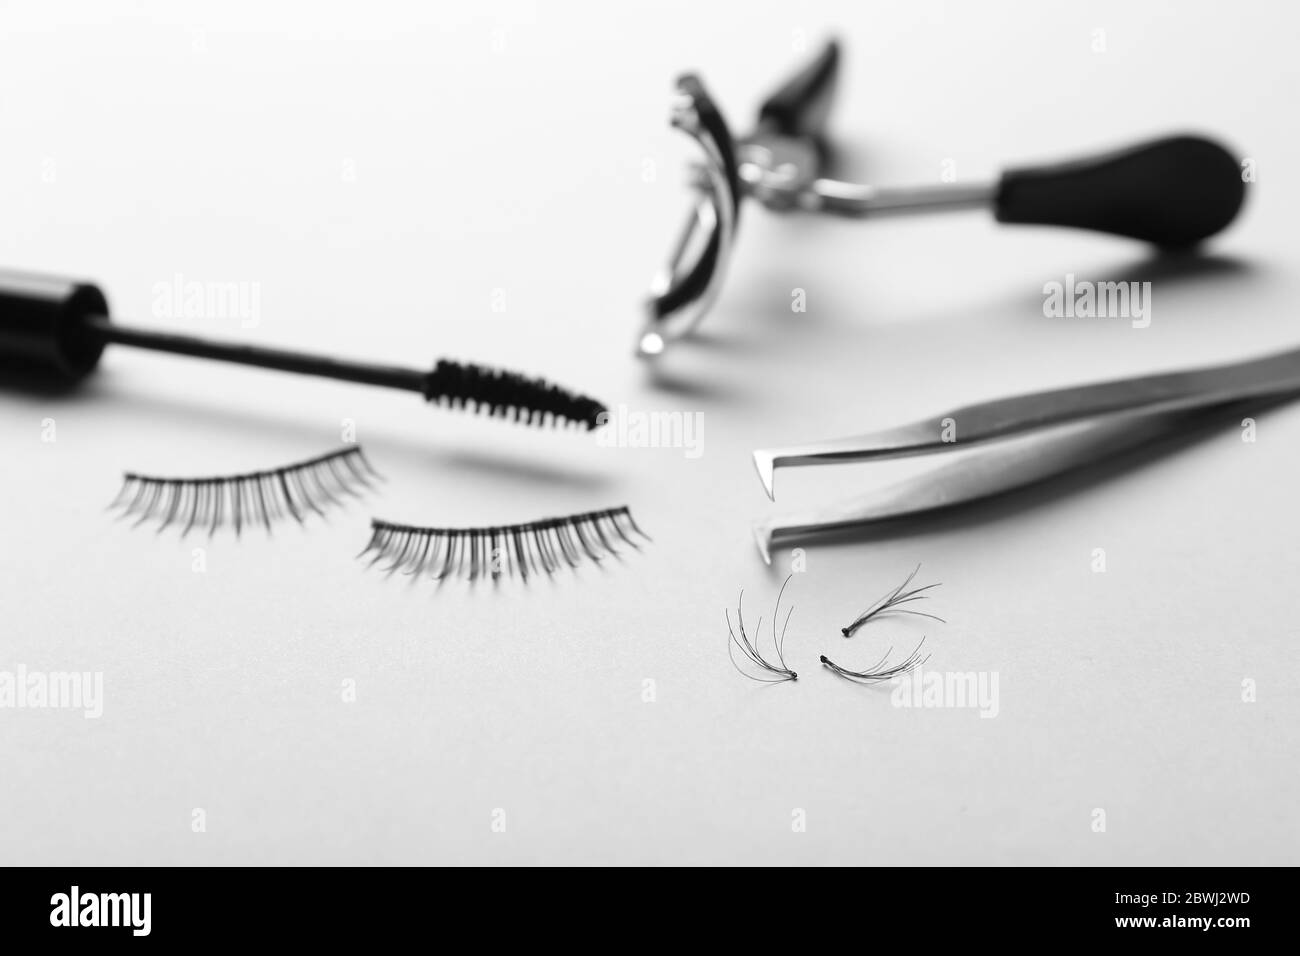 Mascara, gefälschte Wimpern, Pinzette und Lockenstab auf hellem Hintergrund Stockfoto